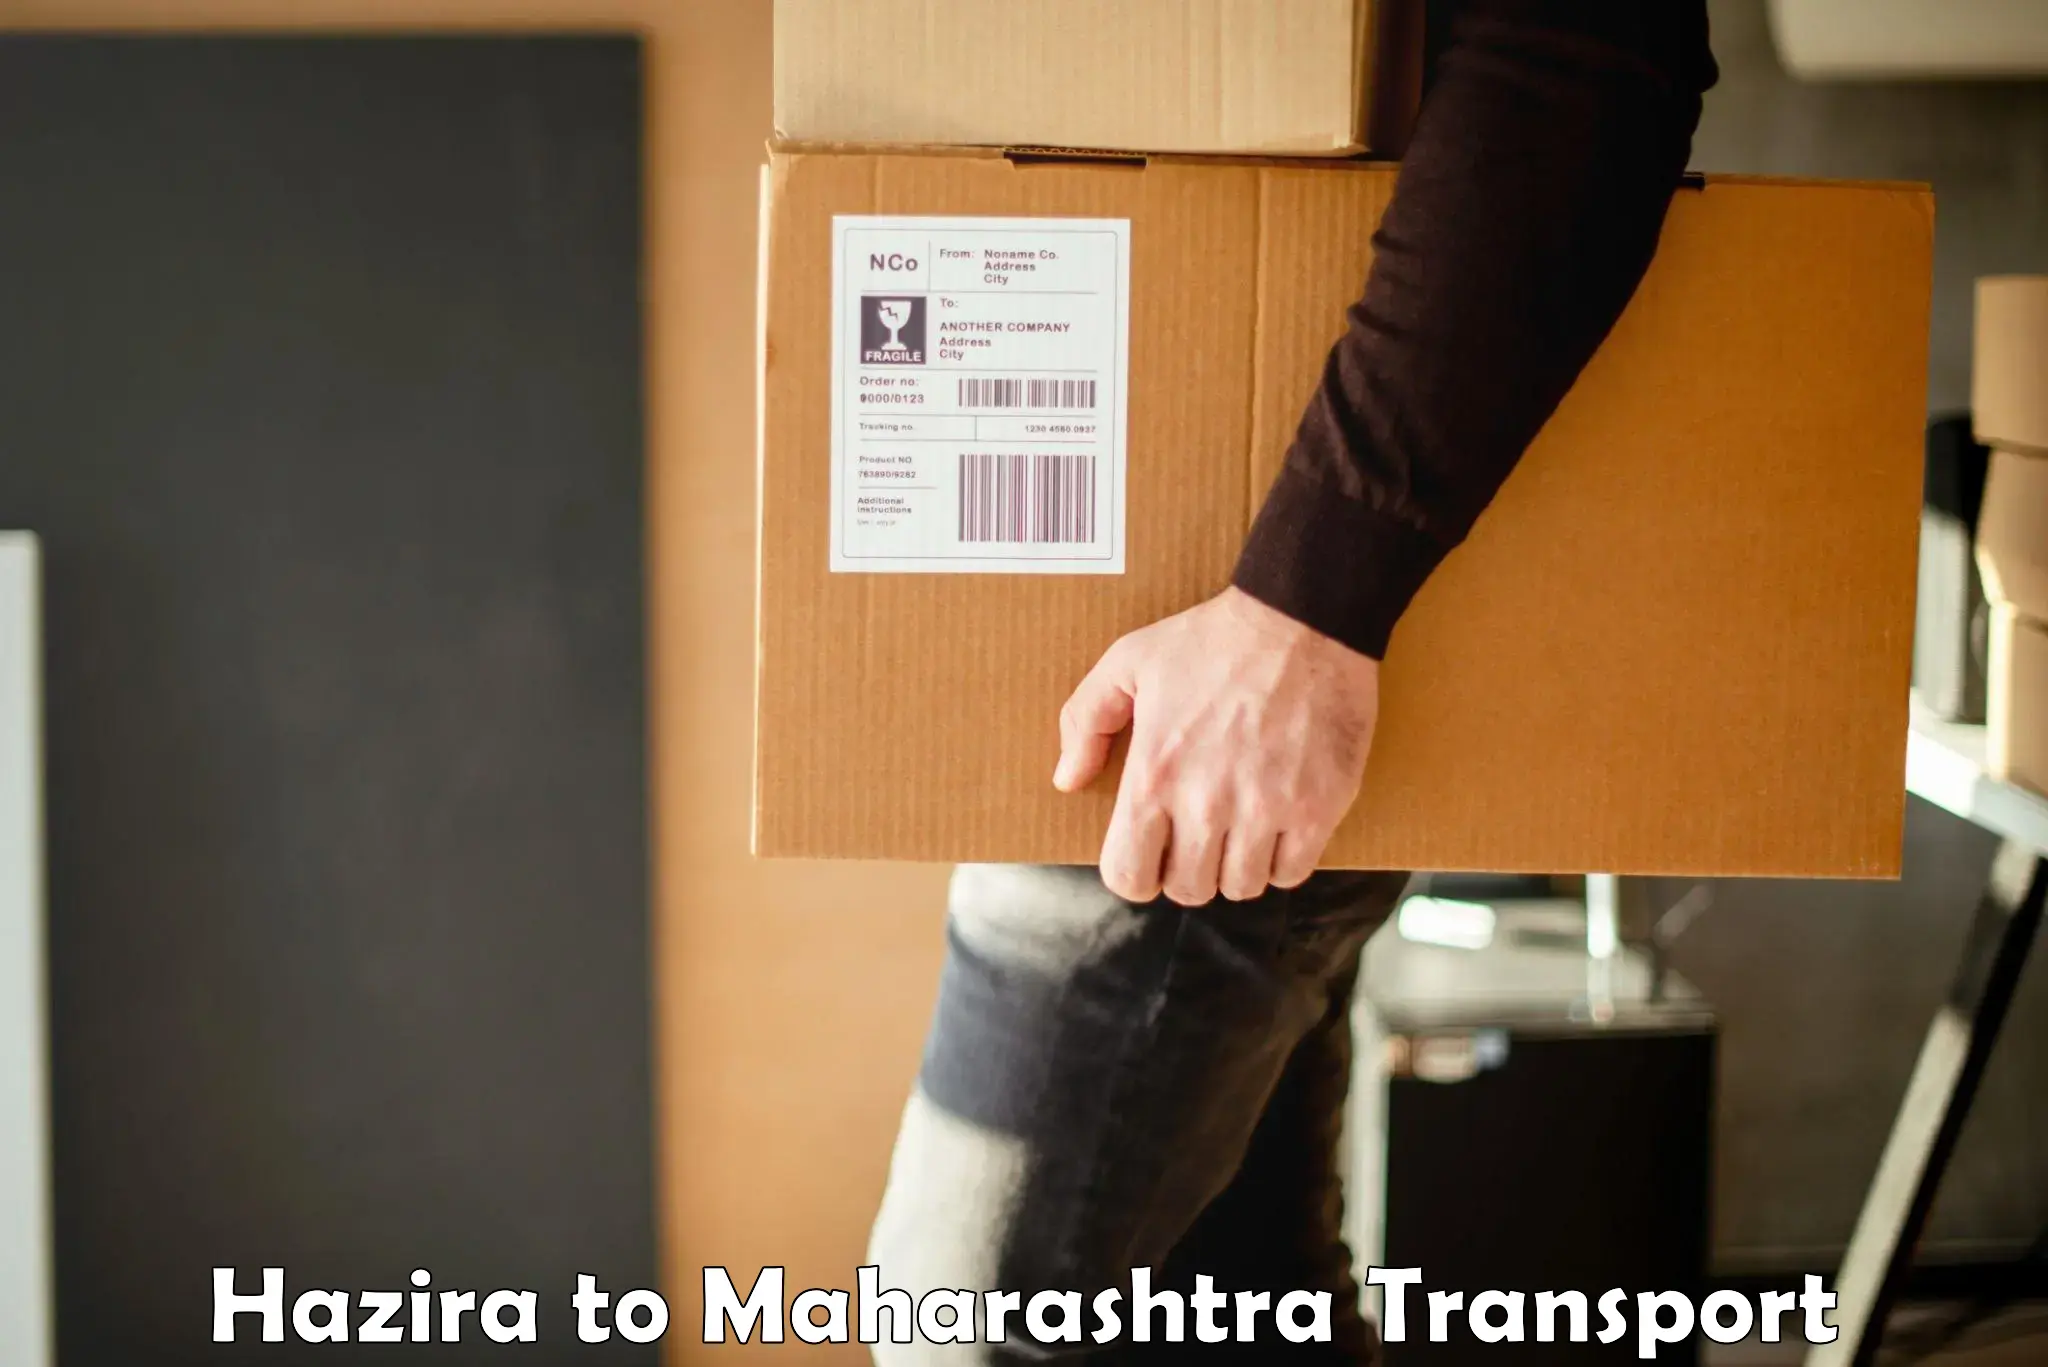 Express transport services Hazira to Mumbai Port